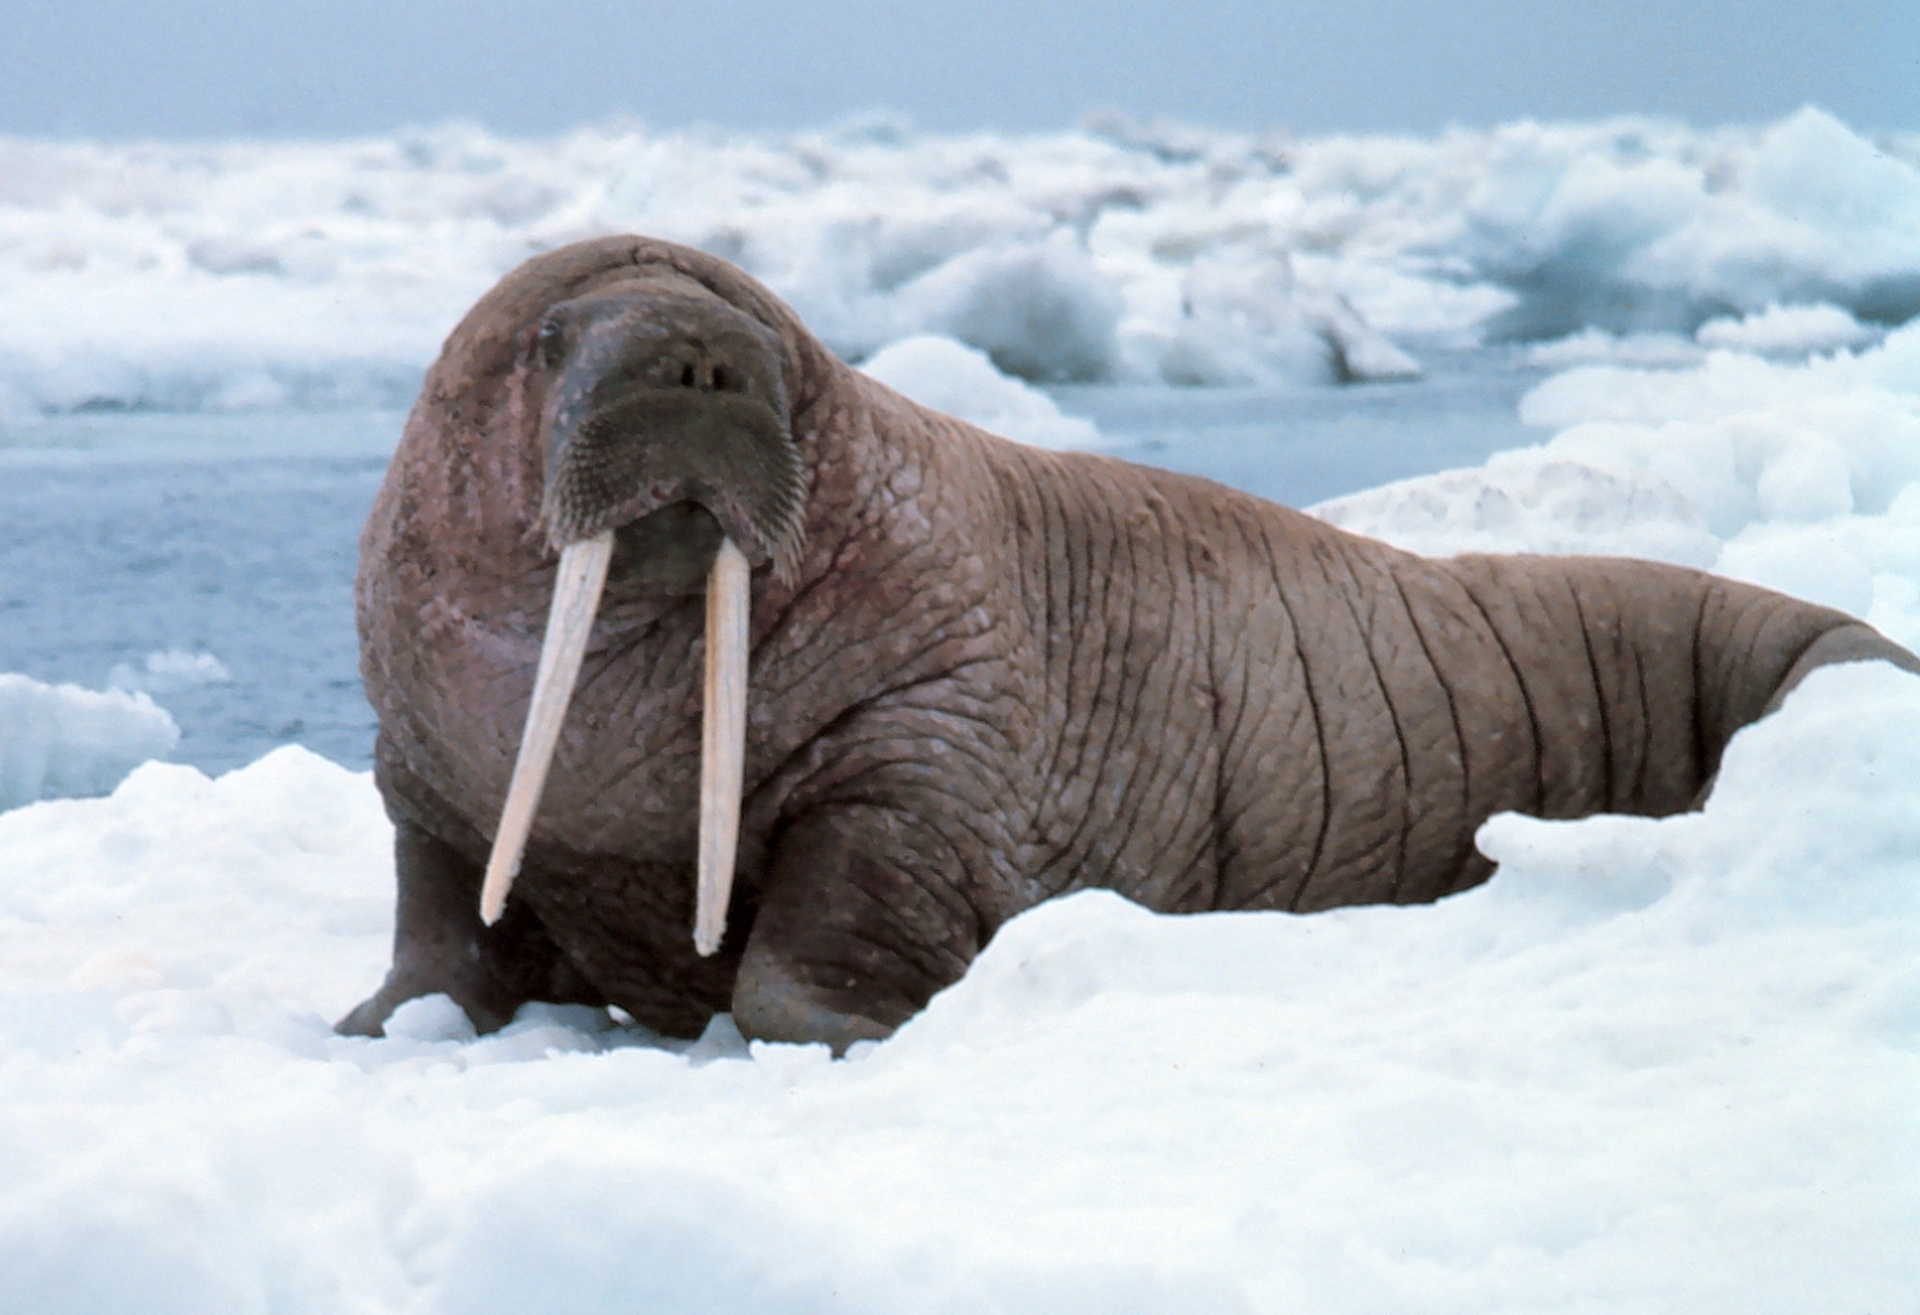 В Норвегии туриста оштрафовали на $1,1 тыс. за беспокойство моржа